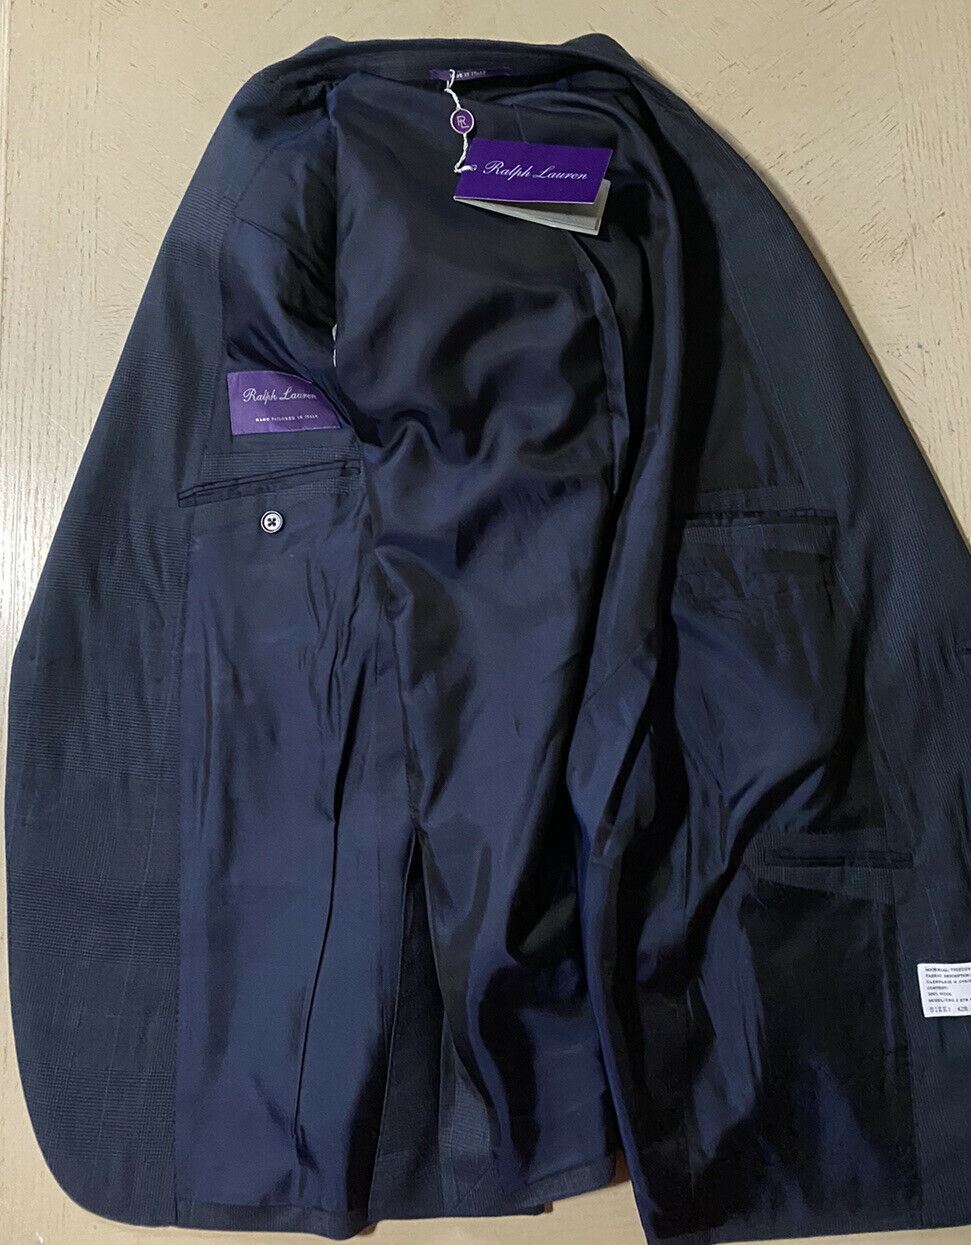 Новый мужской костюм Ralph Lauren Purple Label стоимостью 3295 долларов США, темно-синий 42R US/52R EU Италия